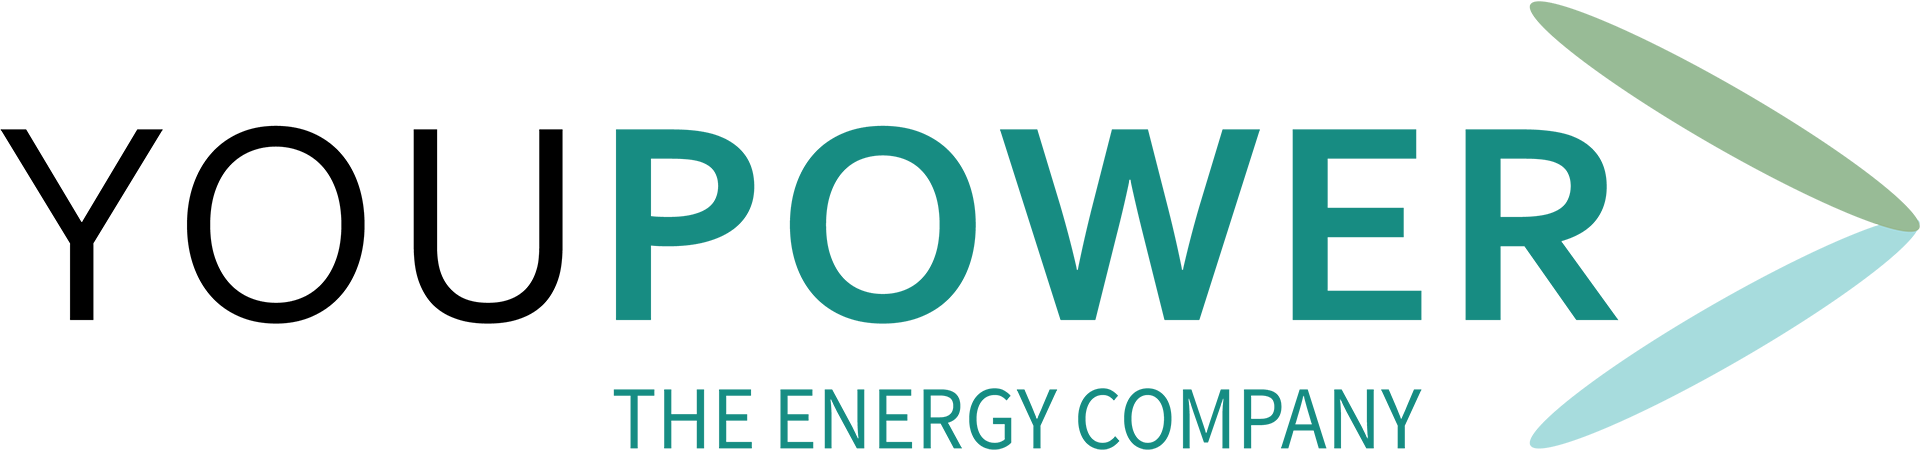 YouPower logo